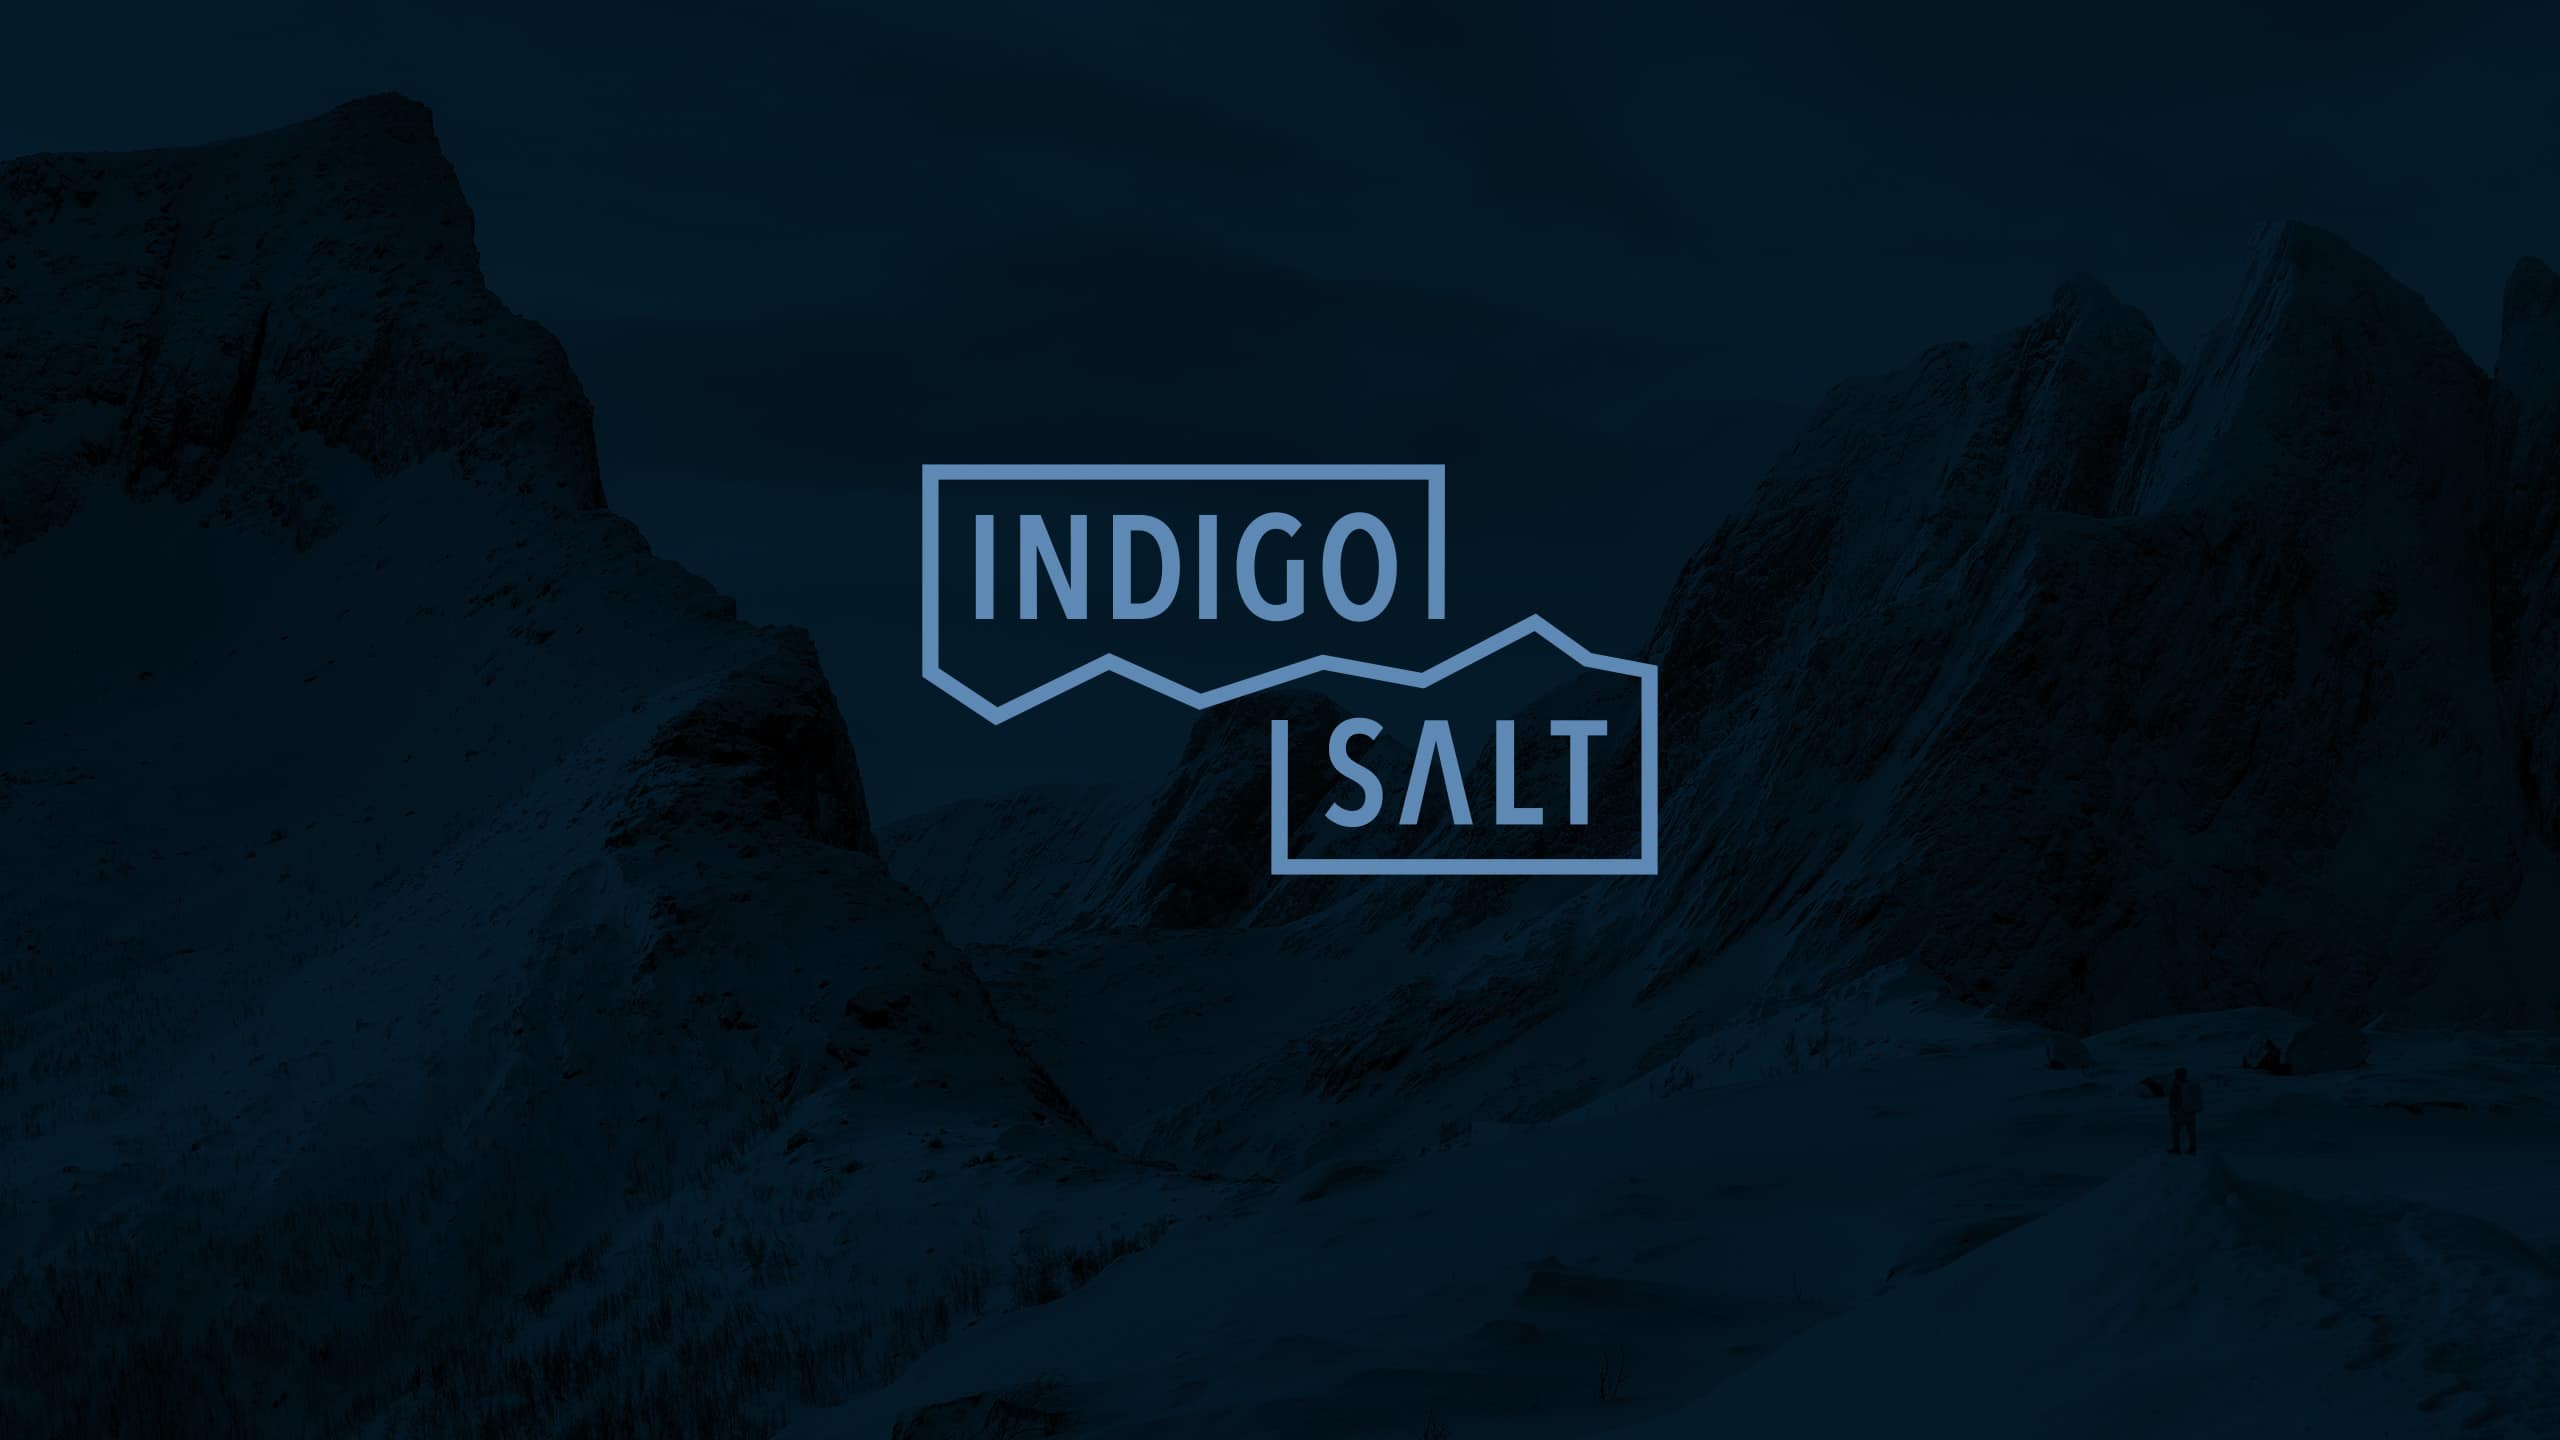 Indigo Salt logo on mountain background image.